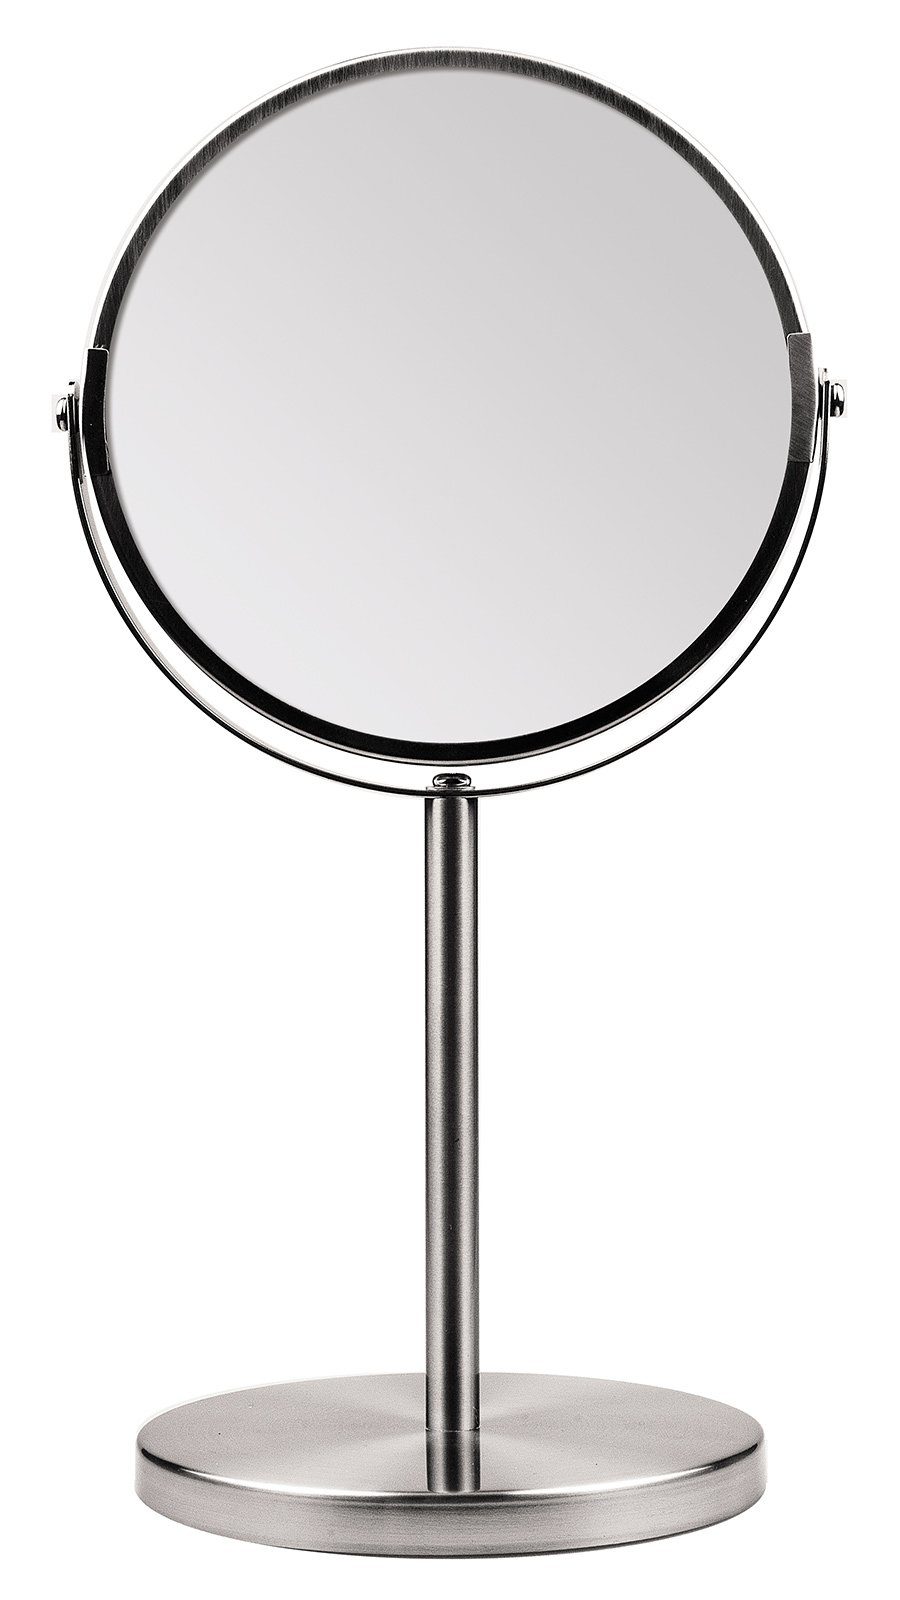 Koskaderm Spiegel Kosmetex Metall Stand-Spiegel mit 2-fach Vergrößerung, 2 Spiegelflächen, 34cm Ø 16cm, Kosmetik-Spieg